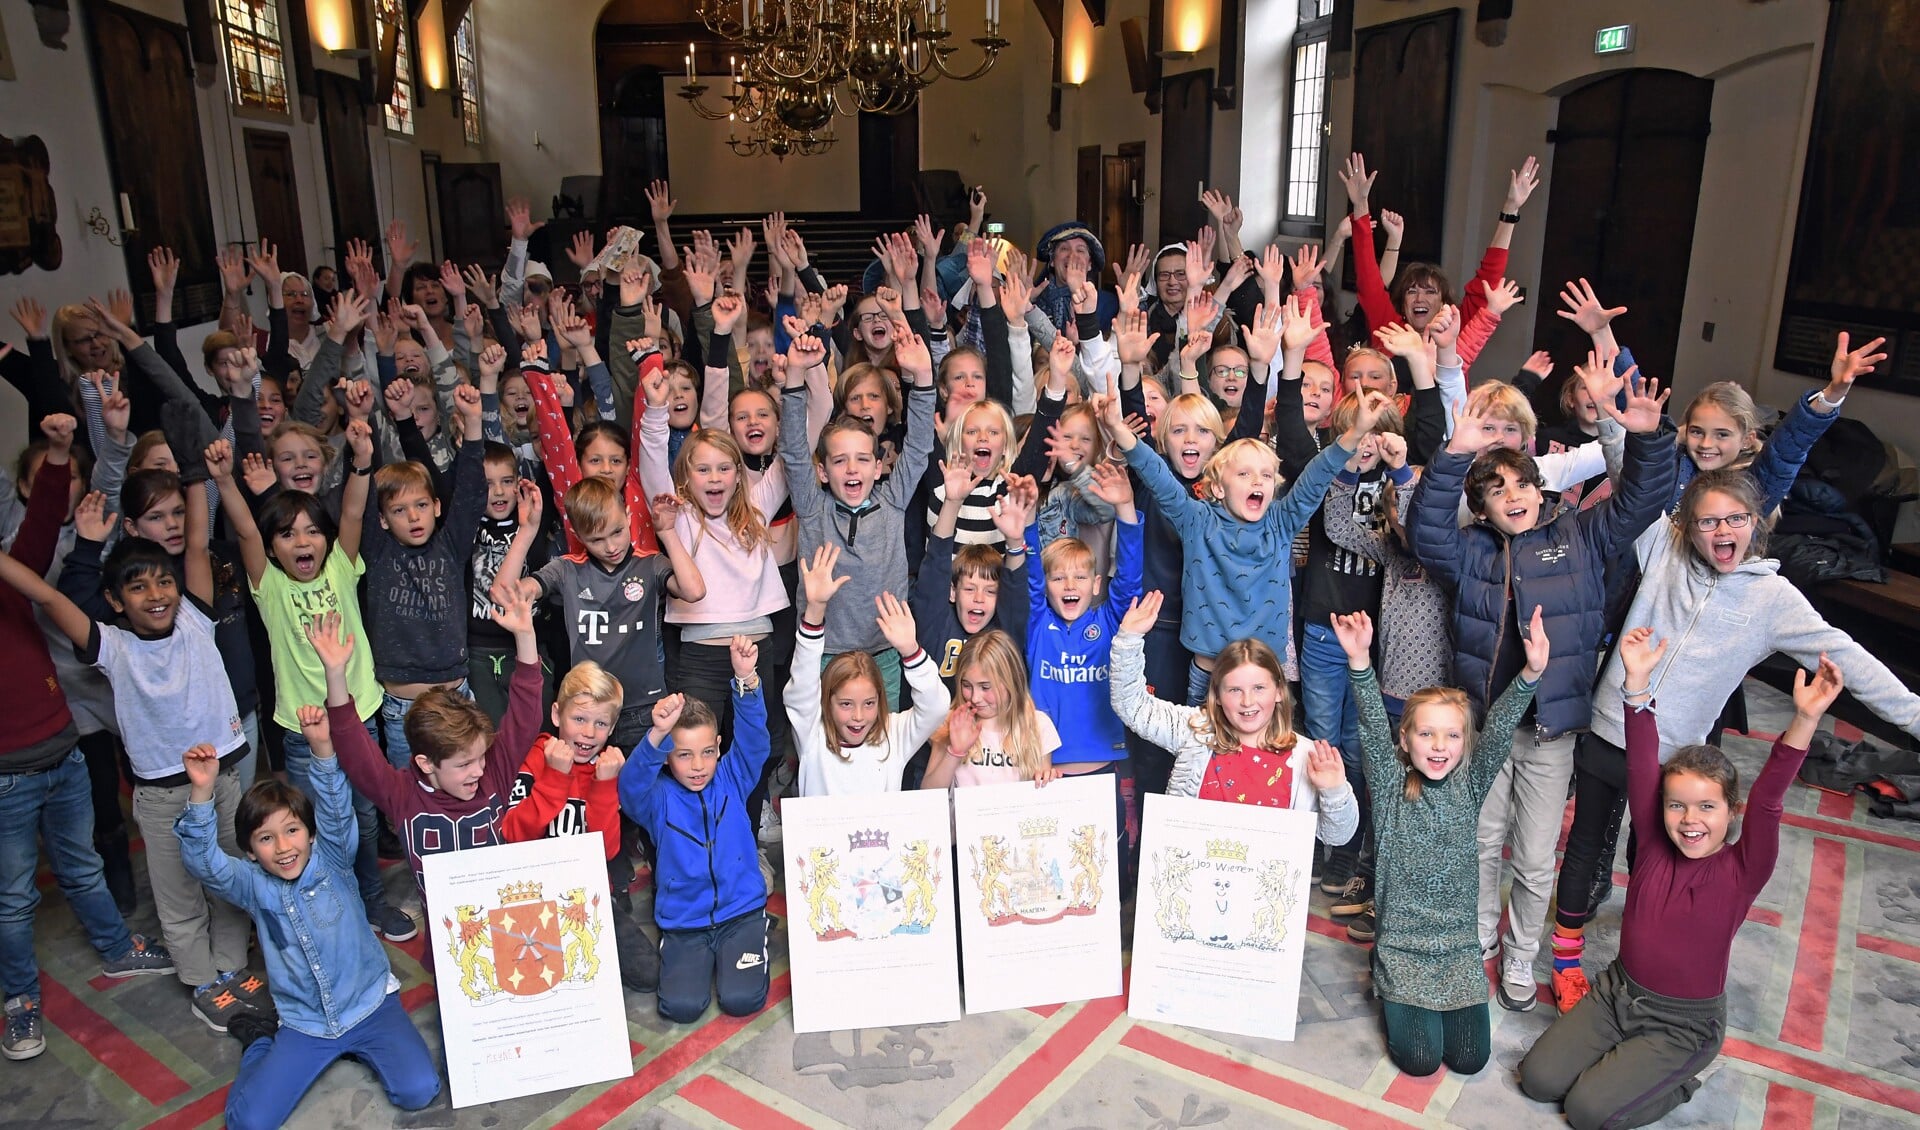 Mooie tekeningen en blije gezichten op het feestje van Haarlem (Foto: Onno Hulshof)